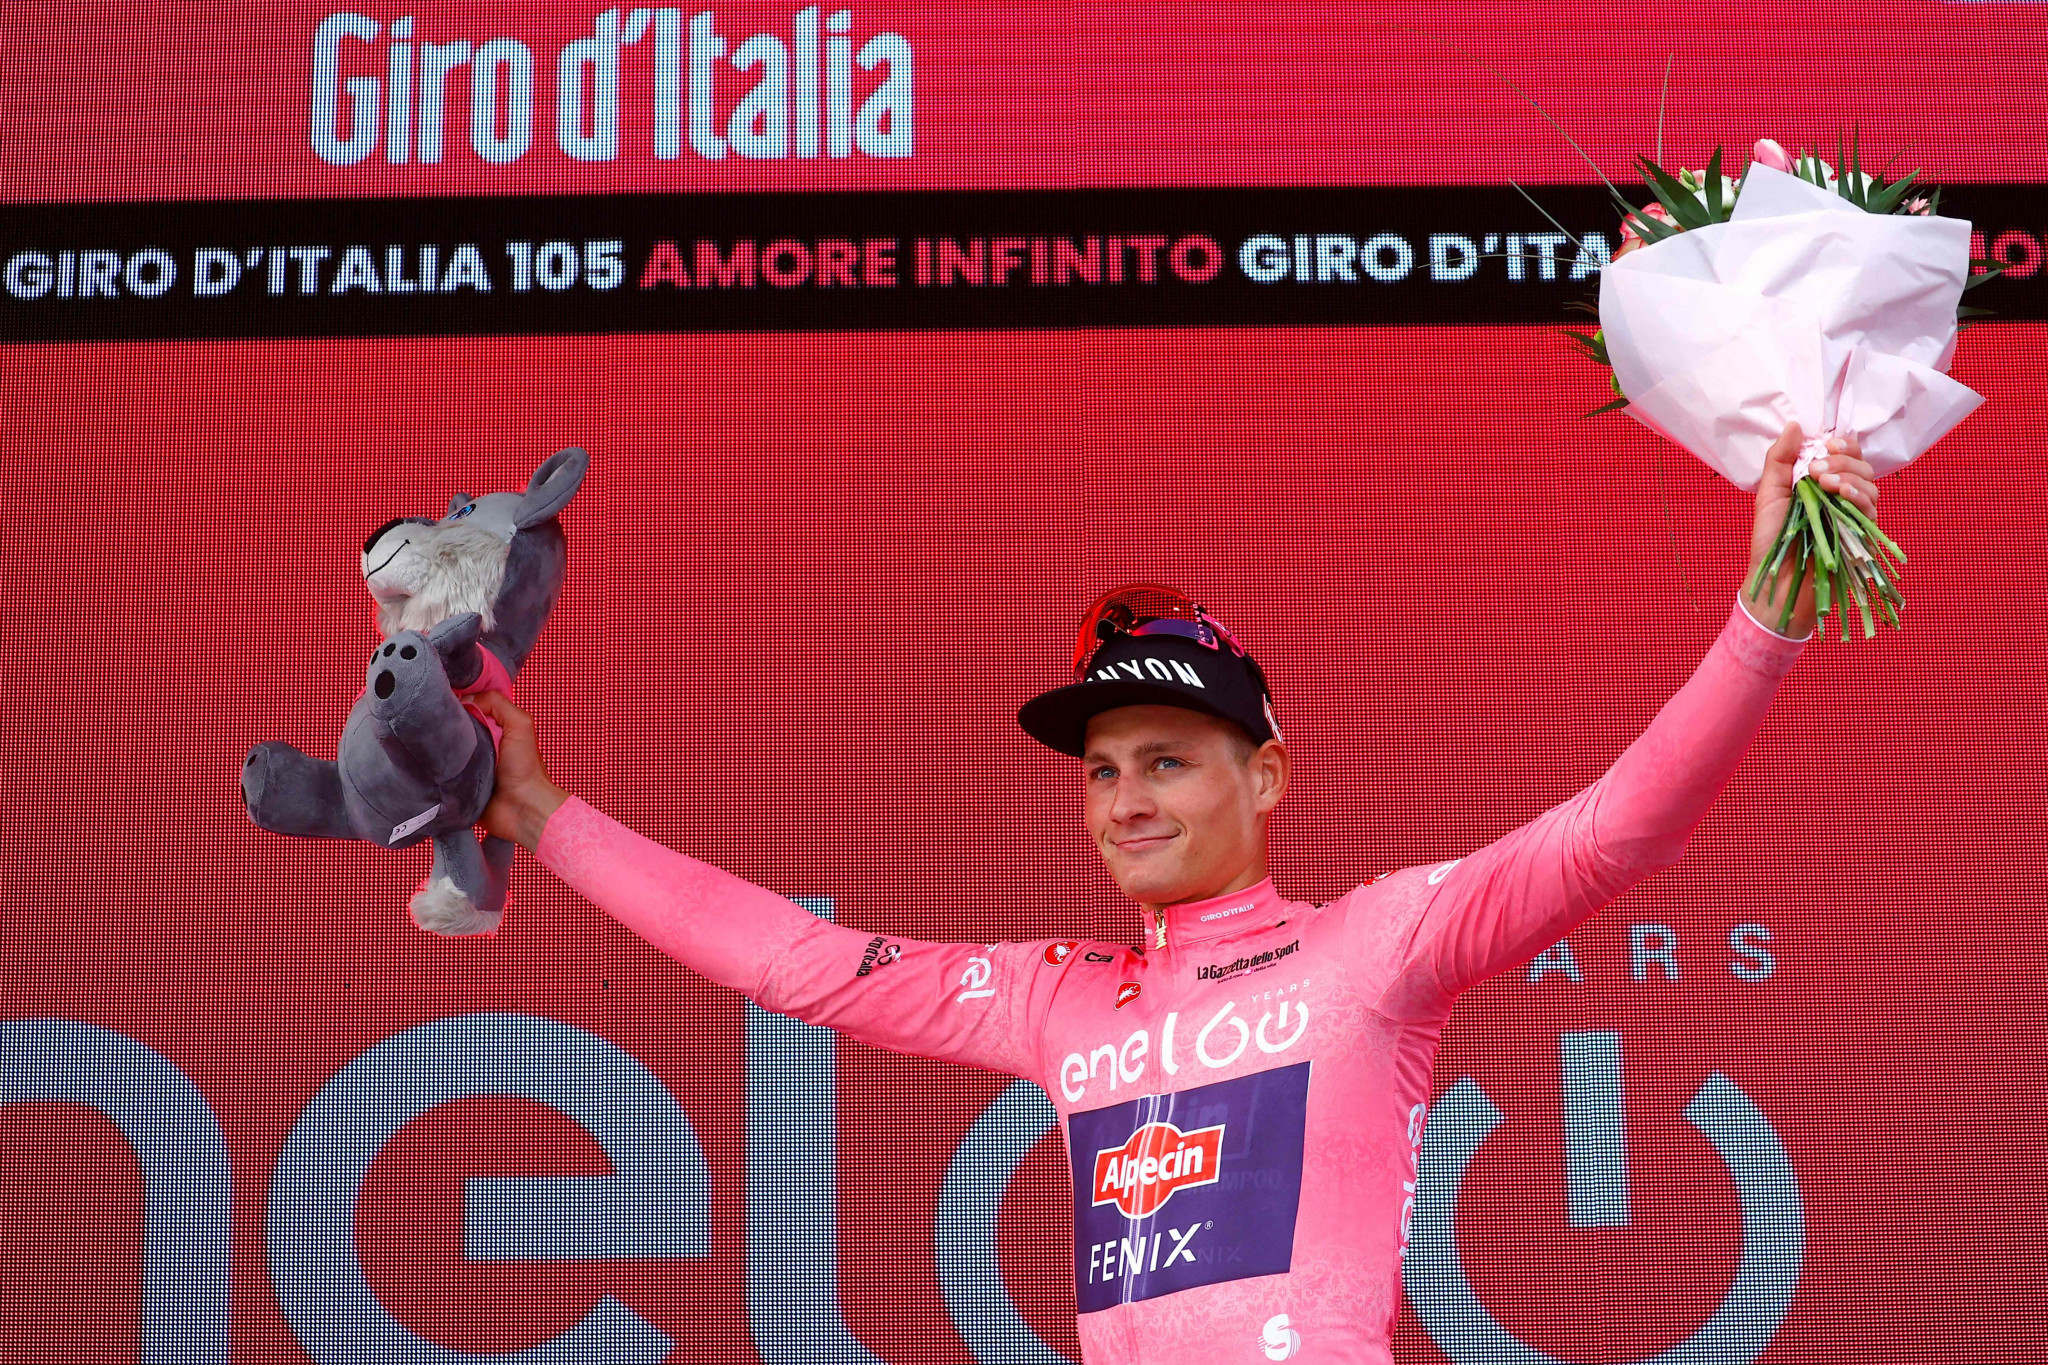 Van der Poel earns first leader's jersey as Giro d'Italia begins in Hungary